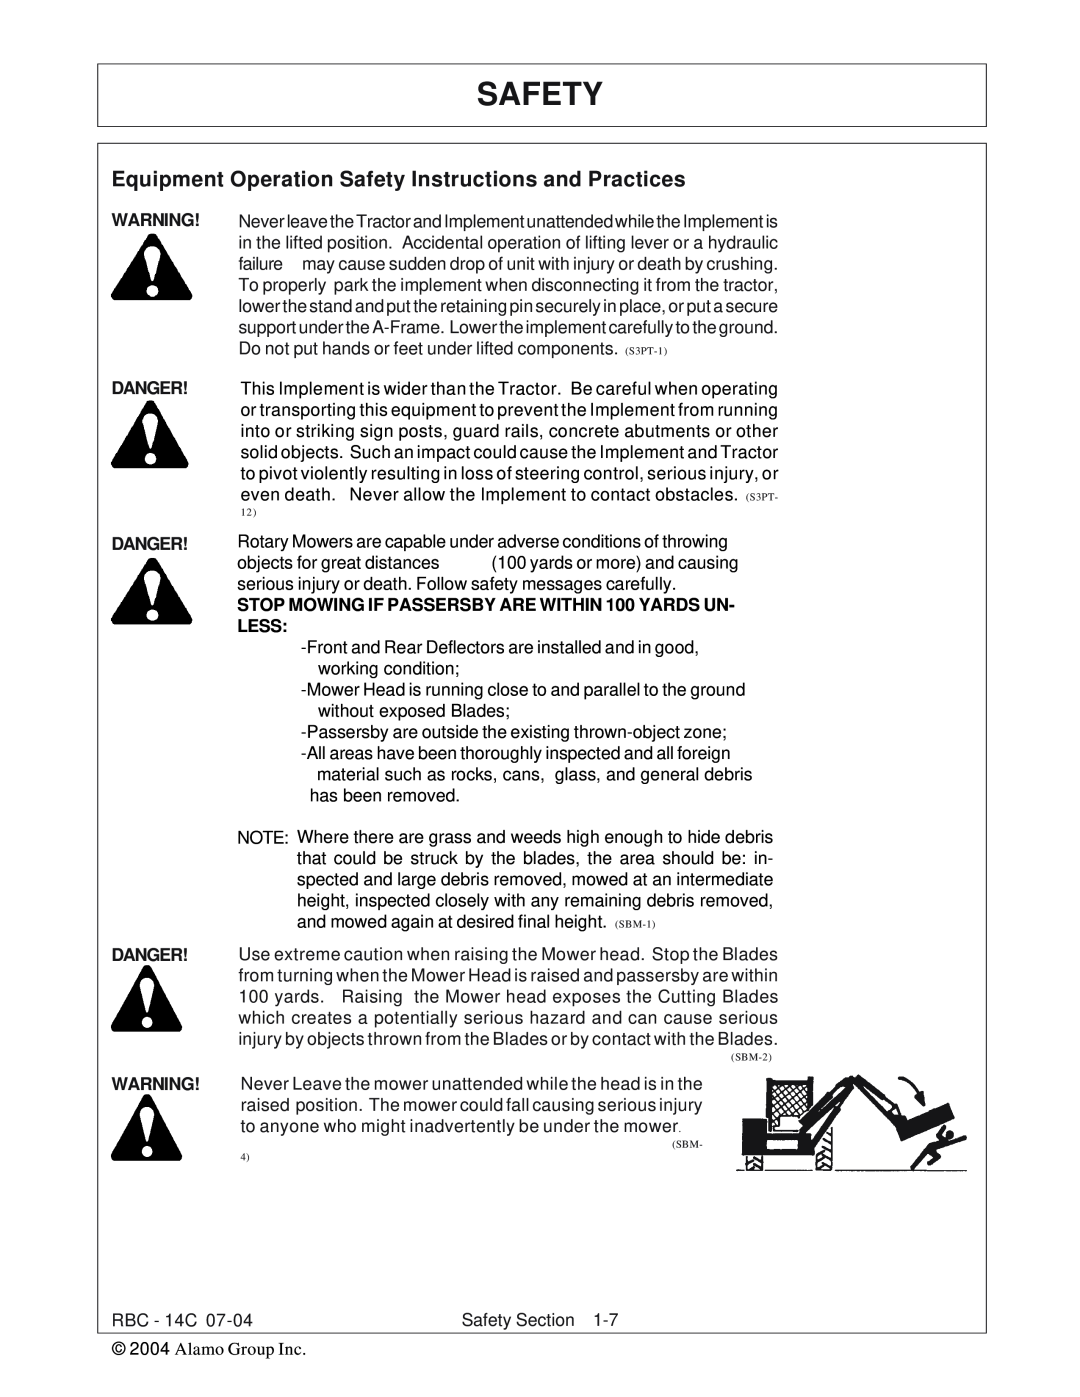 Tiger RBF-14C manual Safety, Danger Danger Danger 